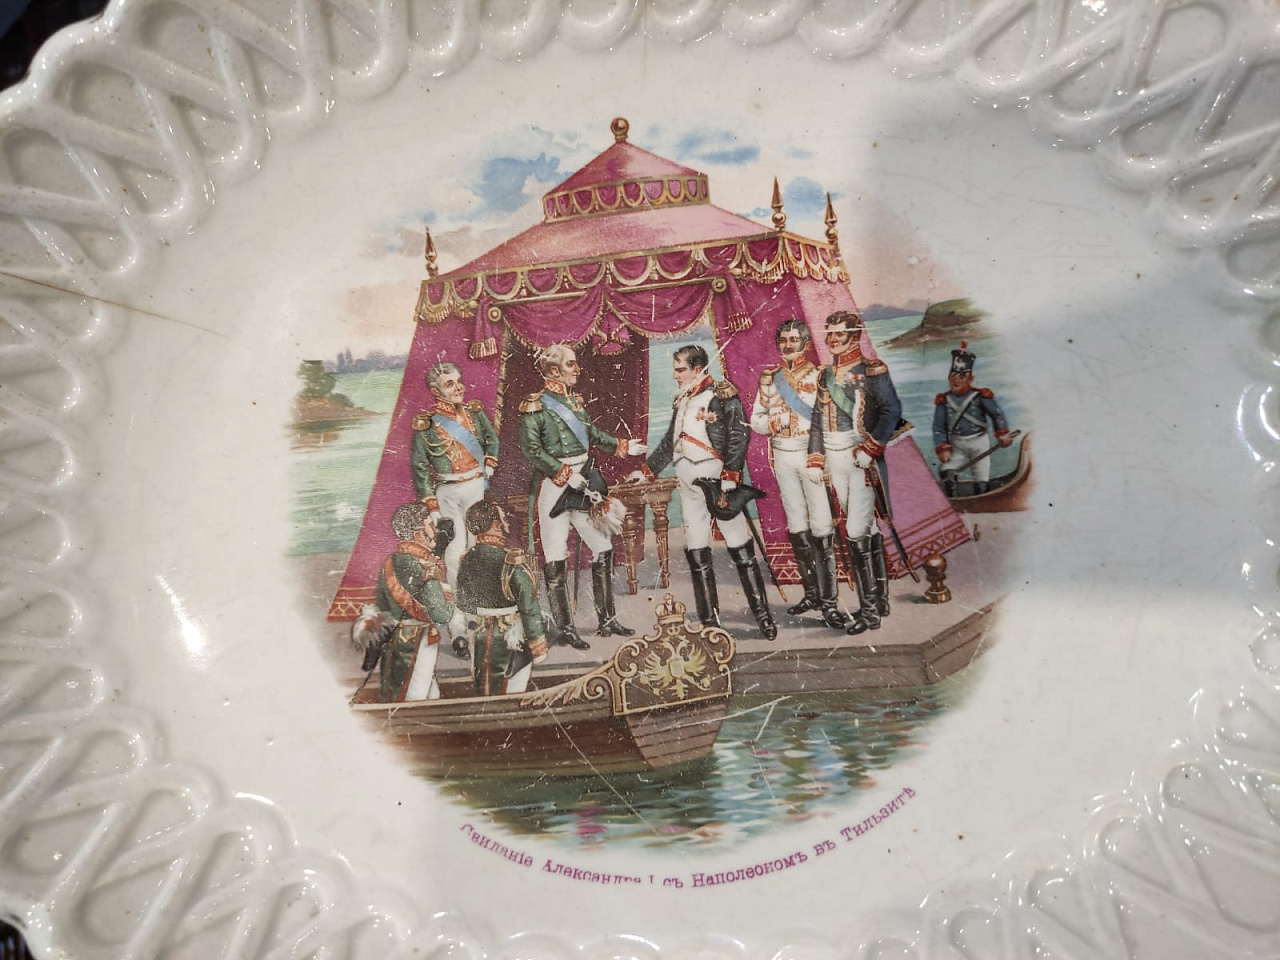 фарфоровое блюдо Свидание Александра 1 с Наполеоном в Тильзите, фарфор Кузнецова, царская  фото 2